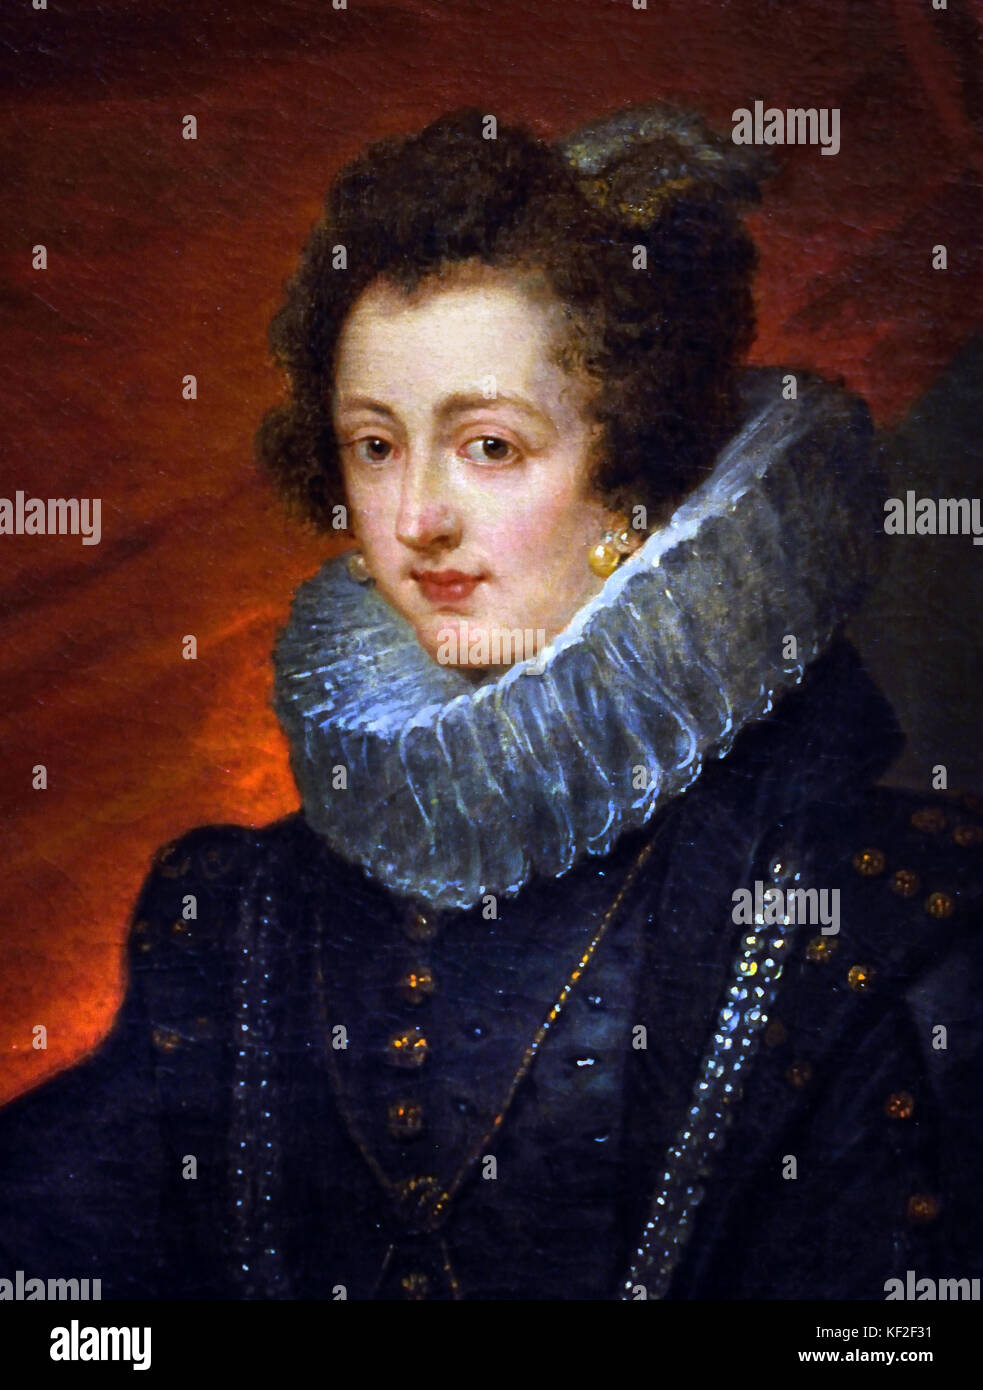 Elisabeth von Frankreich 1602 - 1644 Königin von Spanien Frau von König Philipp IV. von Spanien. Peter Paul Rubens (1577-1640) Maler in der flämischen Barockmalerei Tradition. Antwerpen, Antwerpen, Belgien, Stockfoto